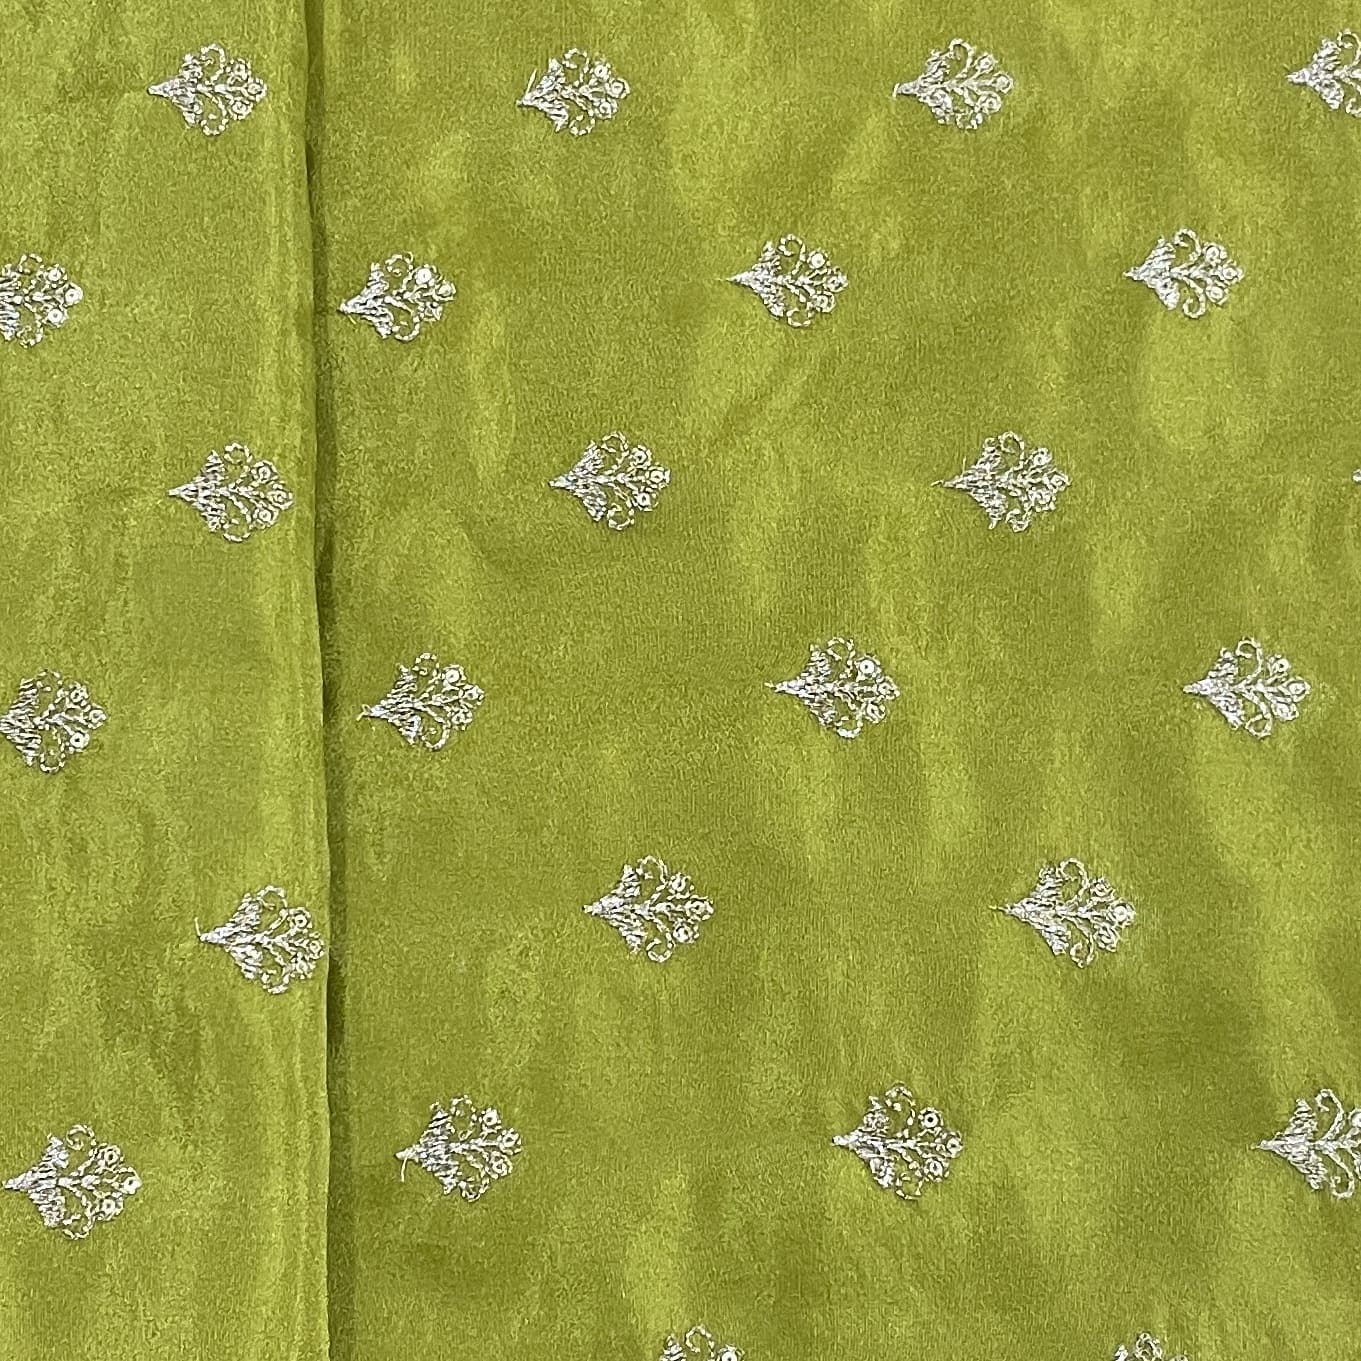 Classic Olive Green Floral Buti Zari Embroidery Tissue Organza Fabric